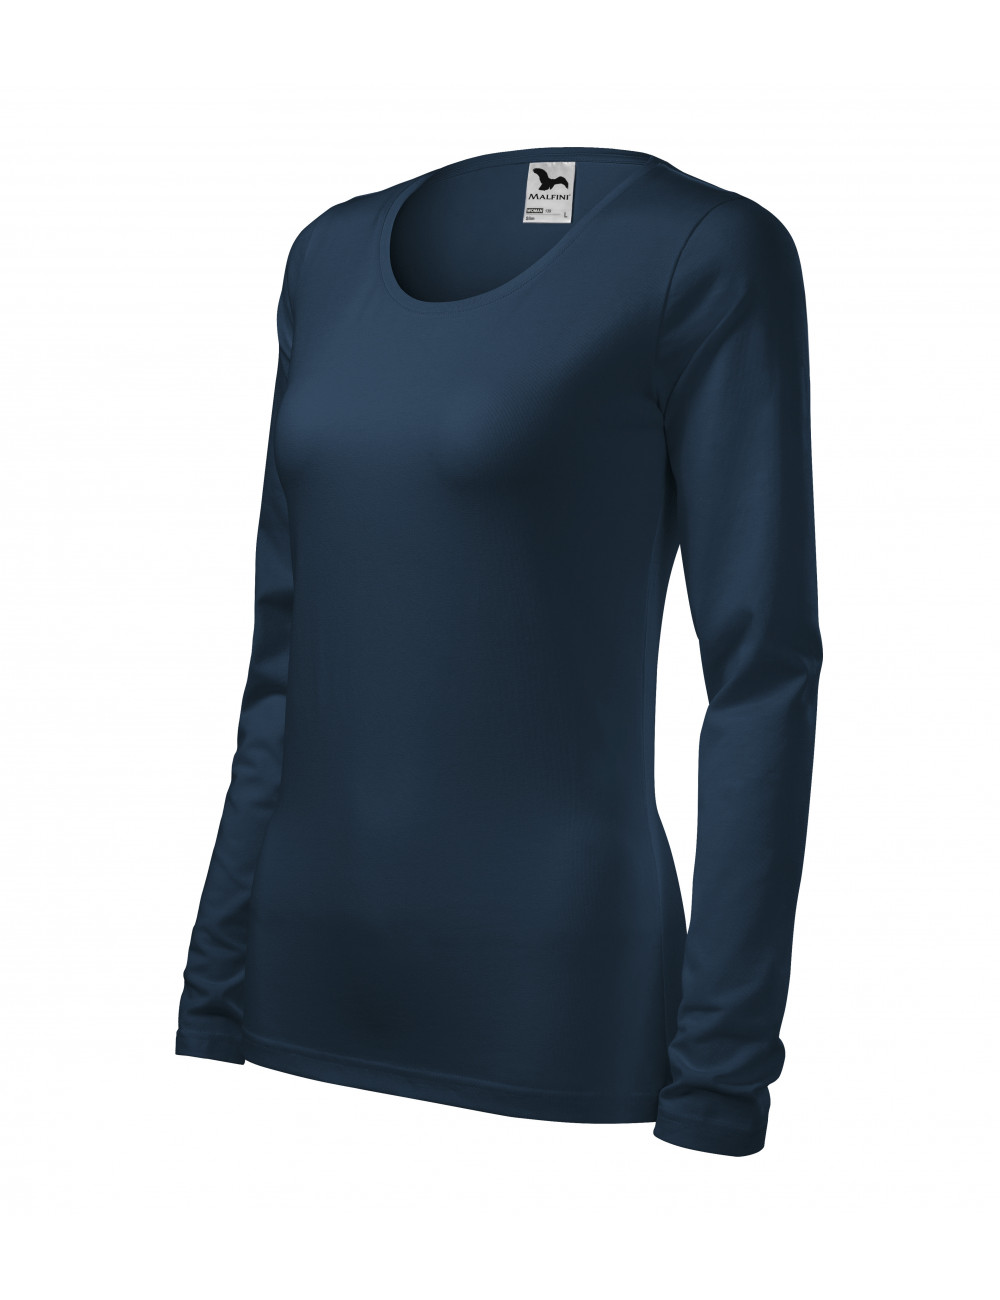 Women`s slim t-shirt 139 navy blue Adler Malfini